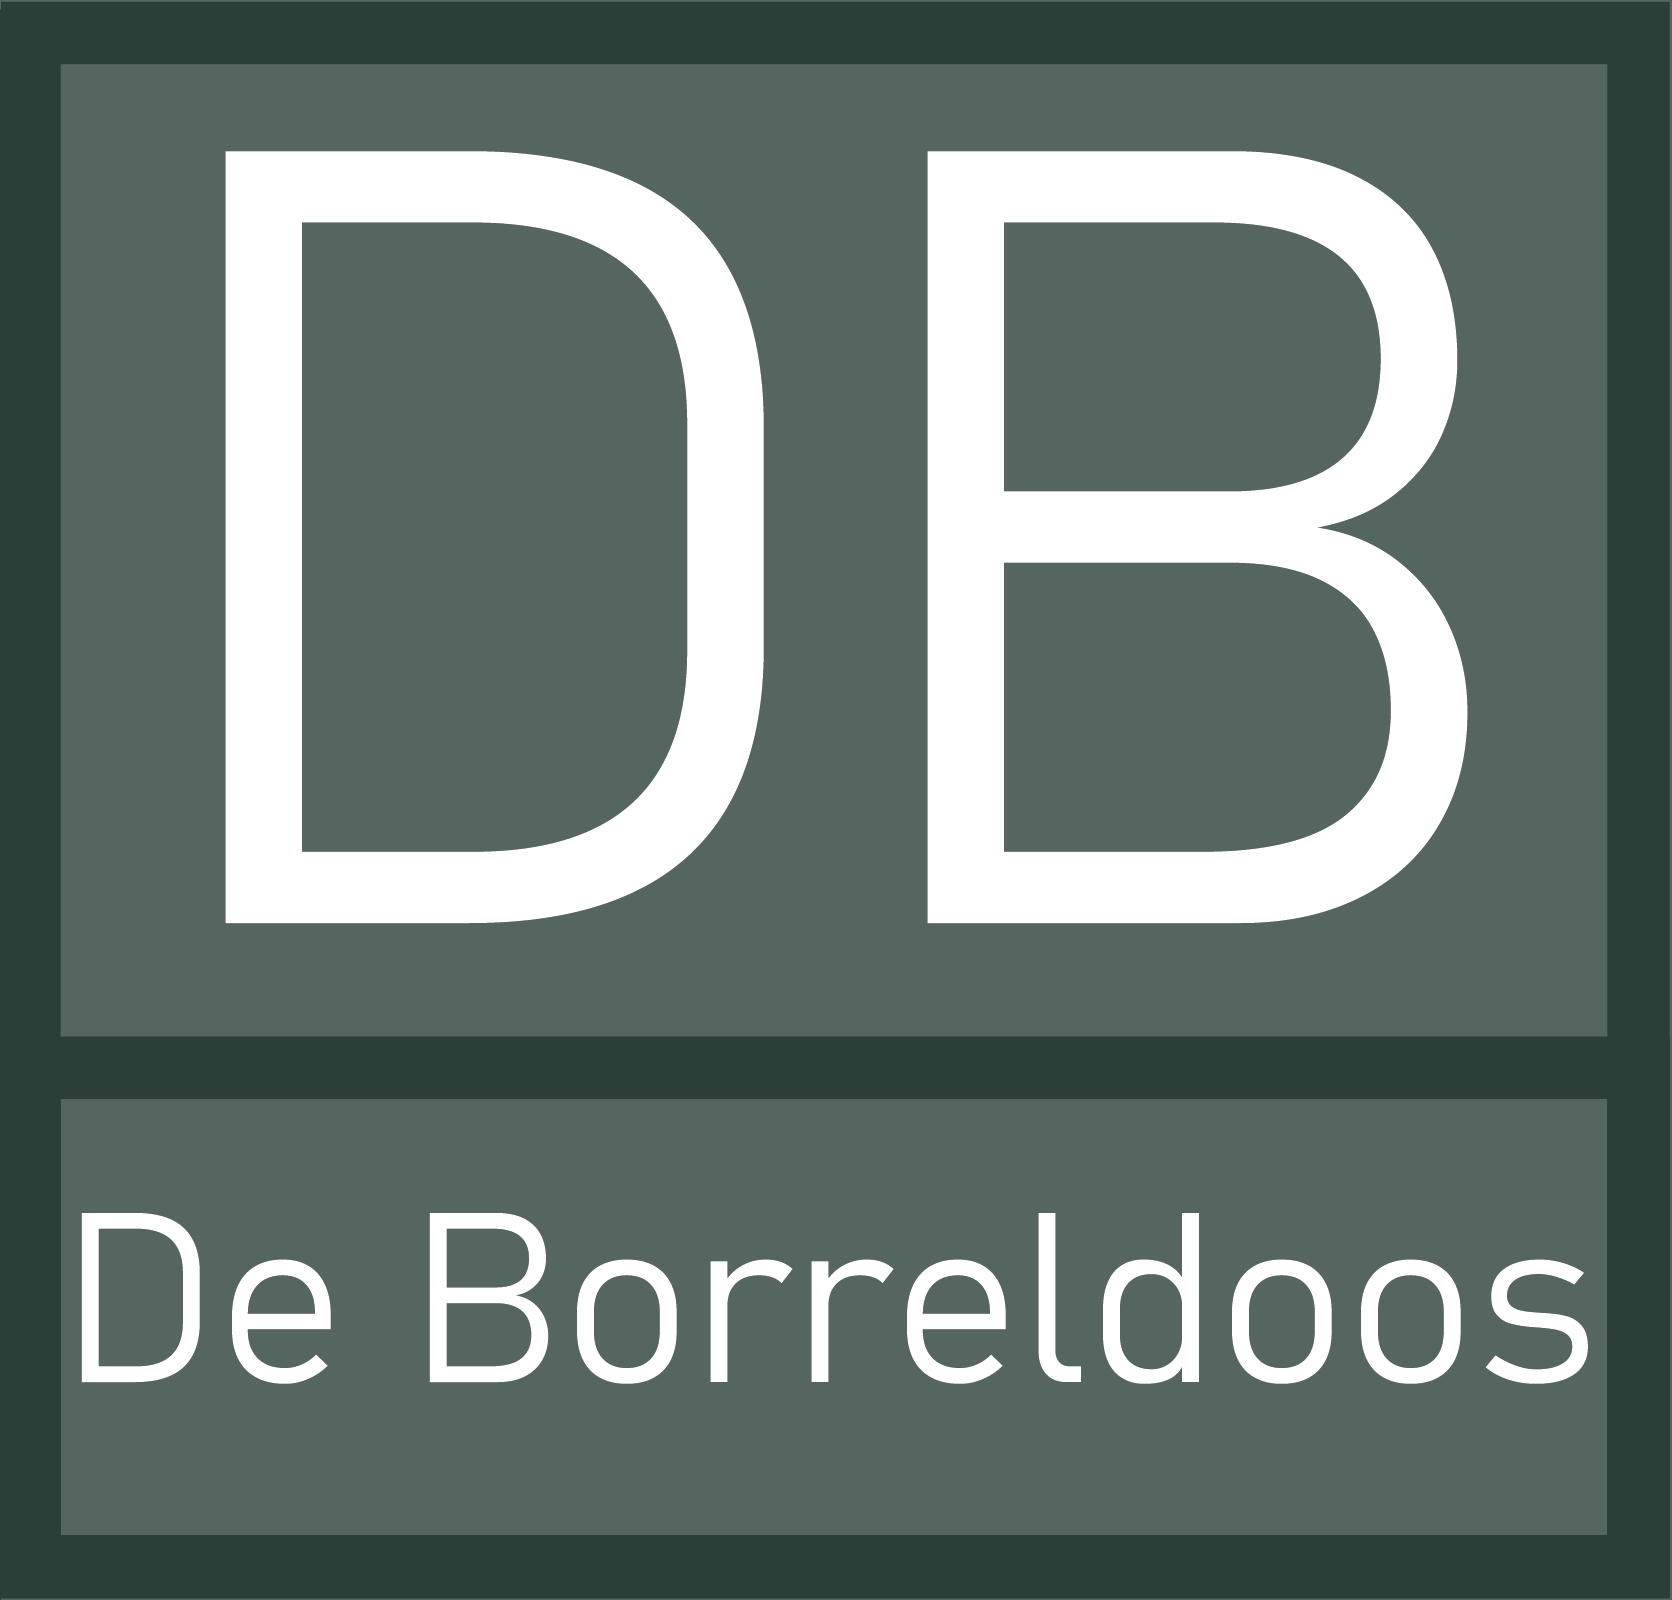 De Borreldoos logo